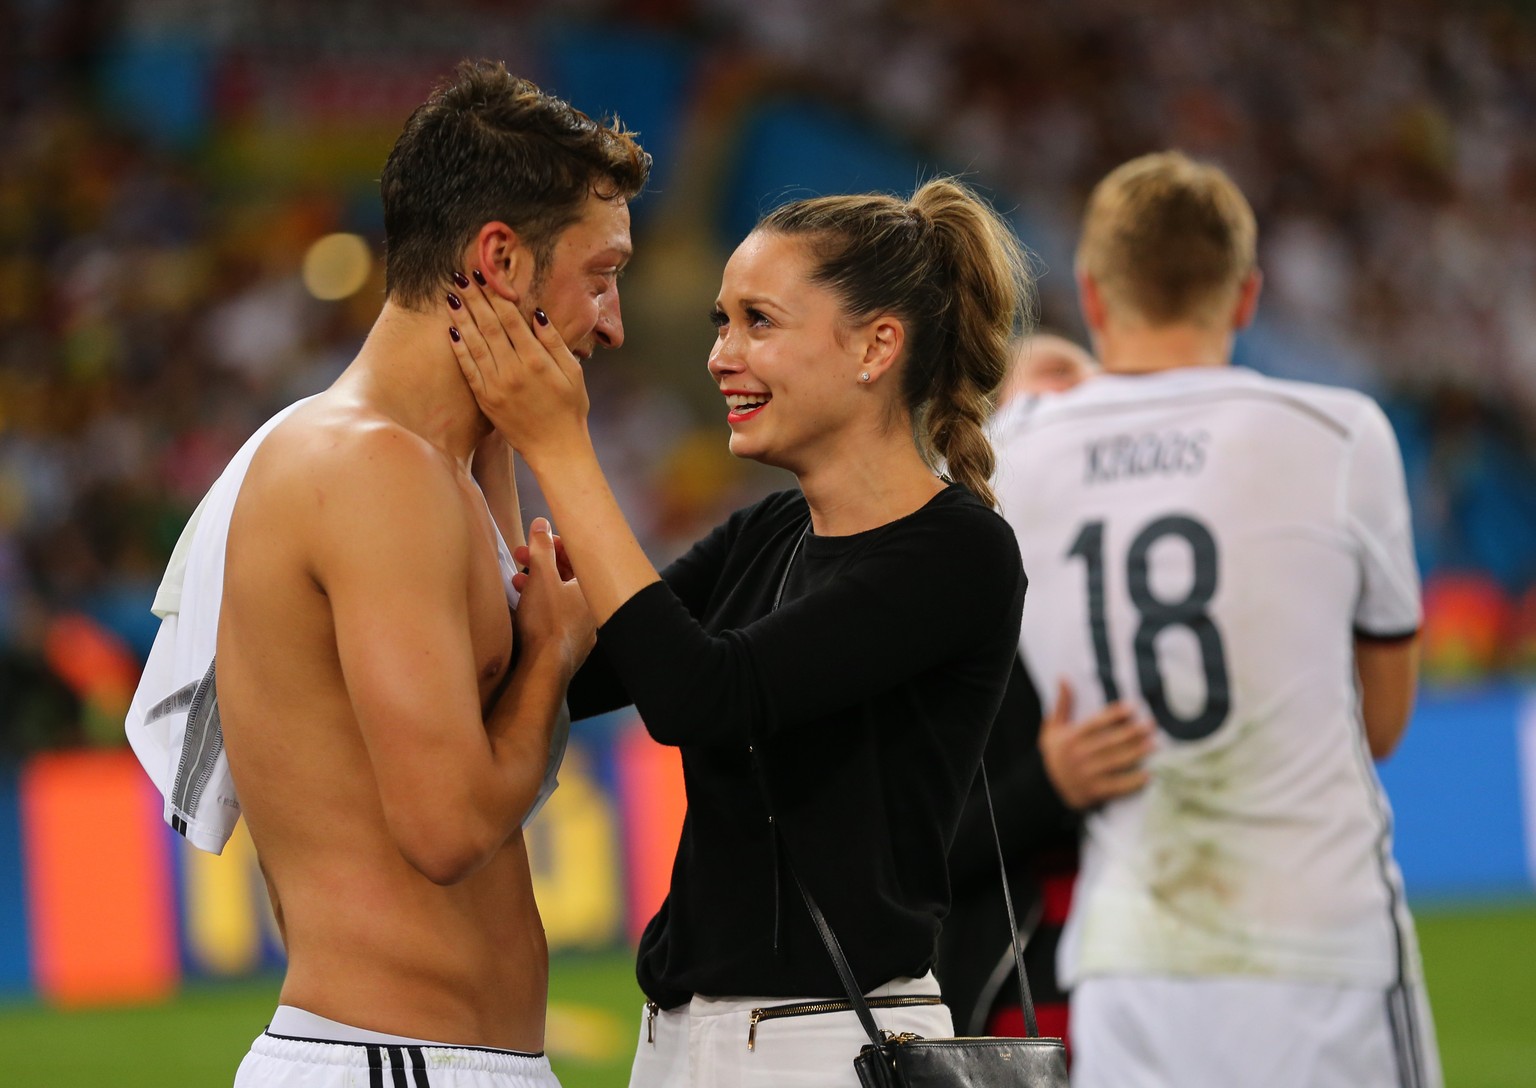 Sonst schimpft Mandy Capristo mit ihrem Mesut Özil, dass er sich ohne Shirt erkälte – nach dem WM-Triumph liess sie ihn für einmal gewähren.